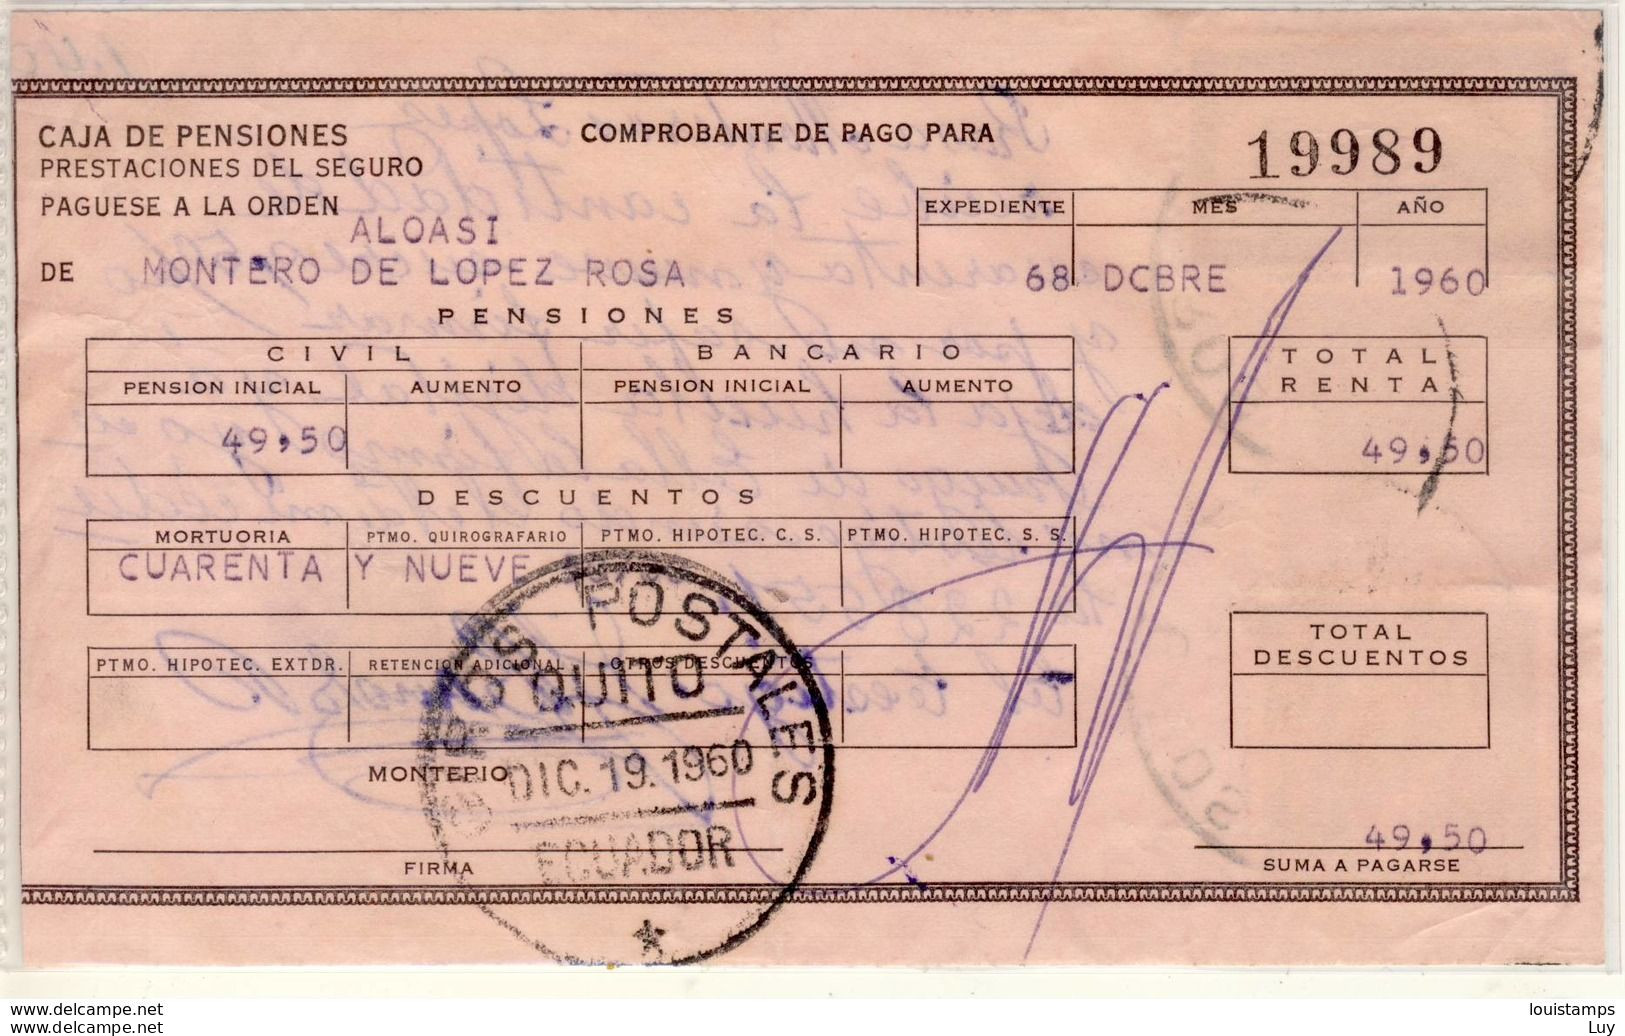 COMPROBANTE DE PAGO PARA CAJA DE PENSIONES 1960 Ref. 152 - Ecuador